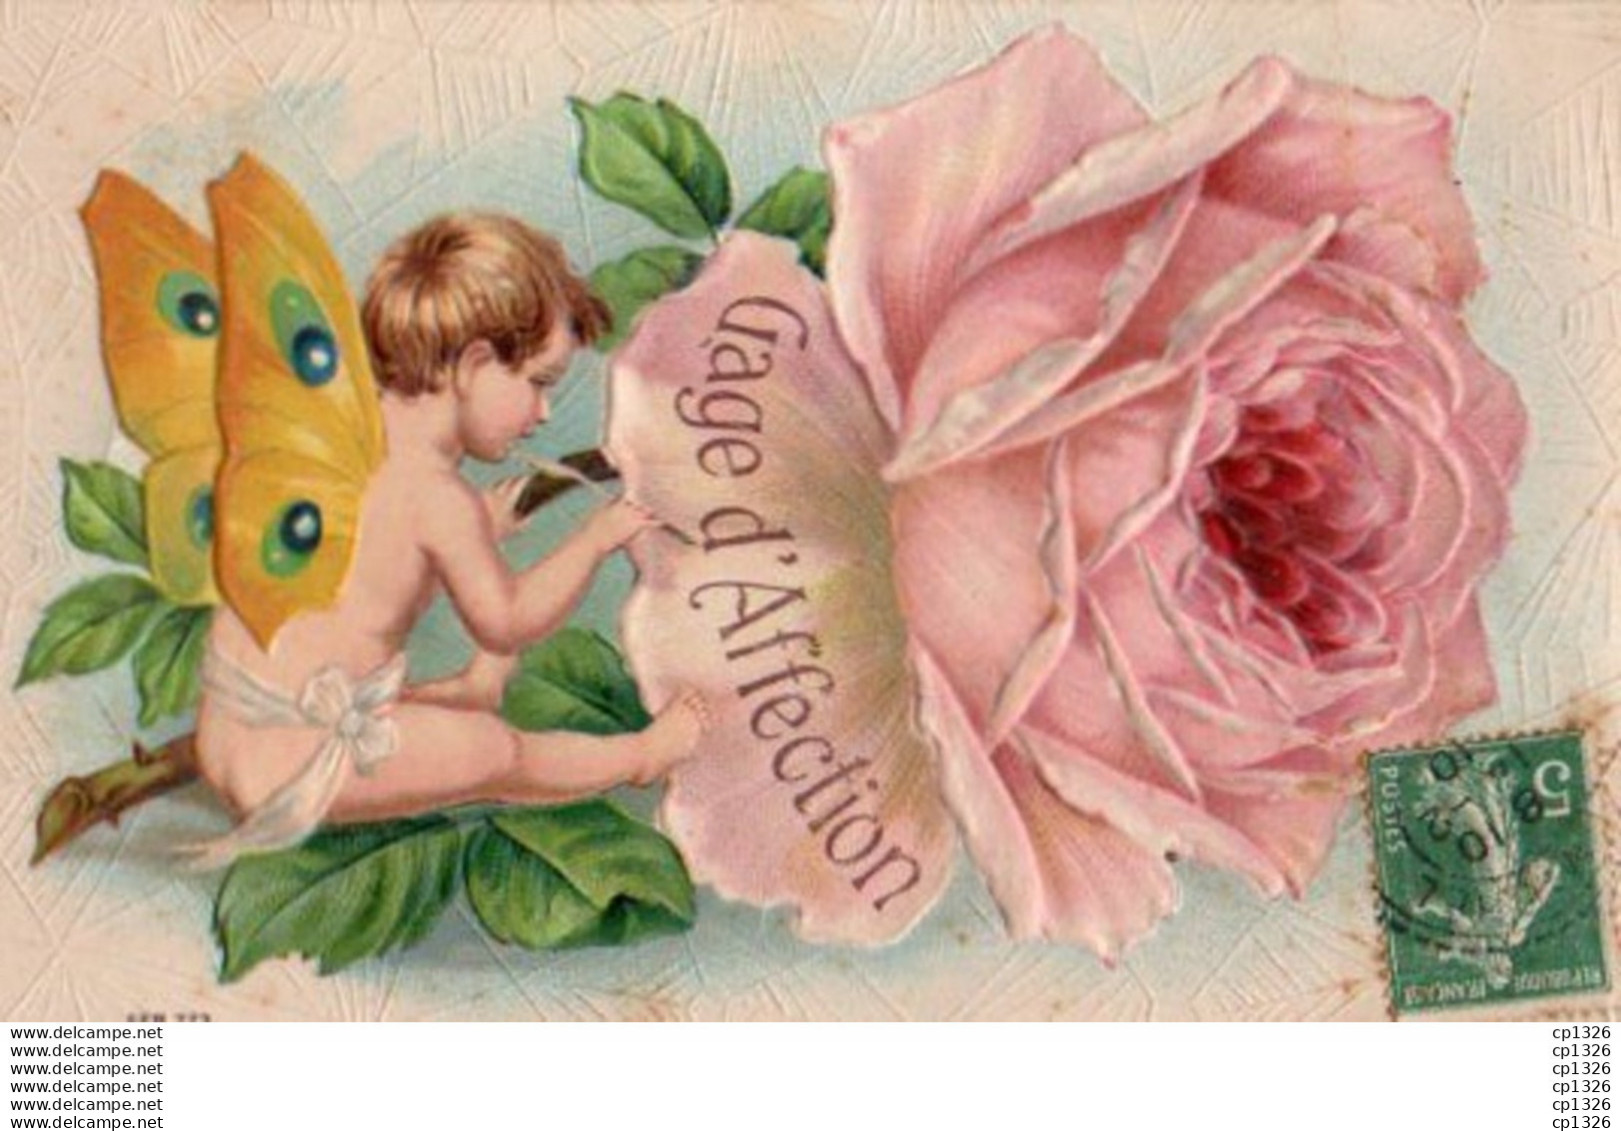 2V11Bv   Cpa Gaufrée Enfant Ange Aux Ailes De Papillon écrivant Sur Une Rose - Dreh- Und Zugkarten